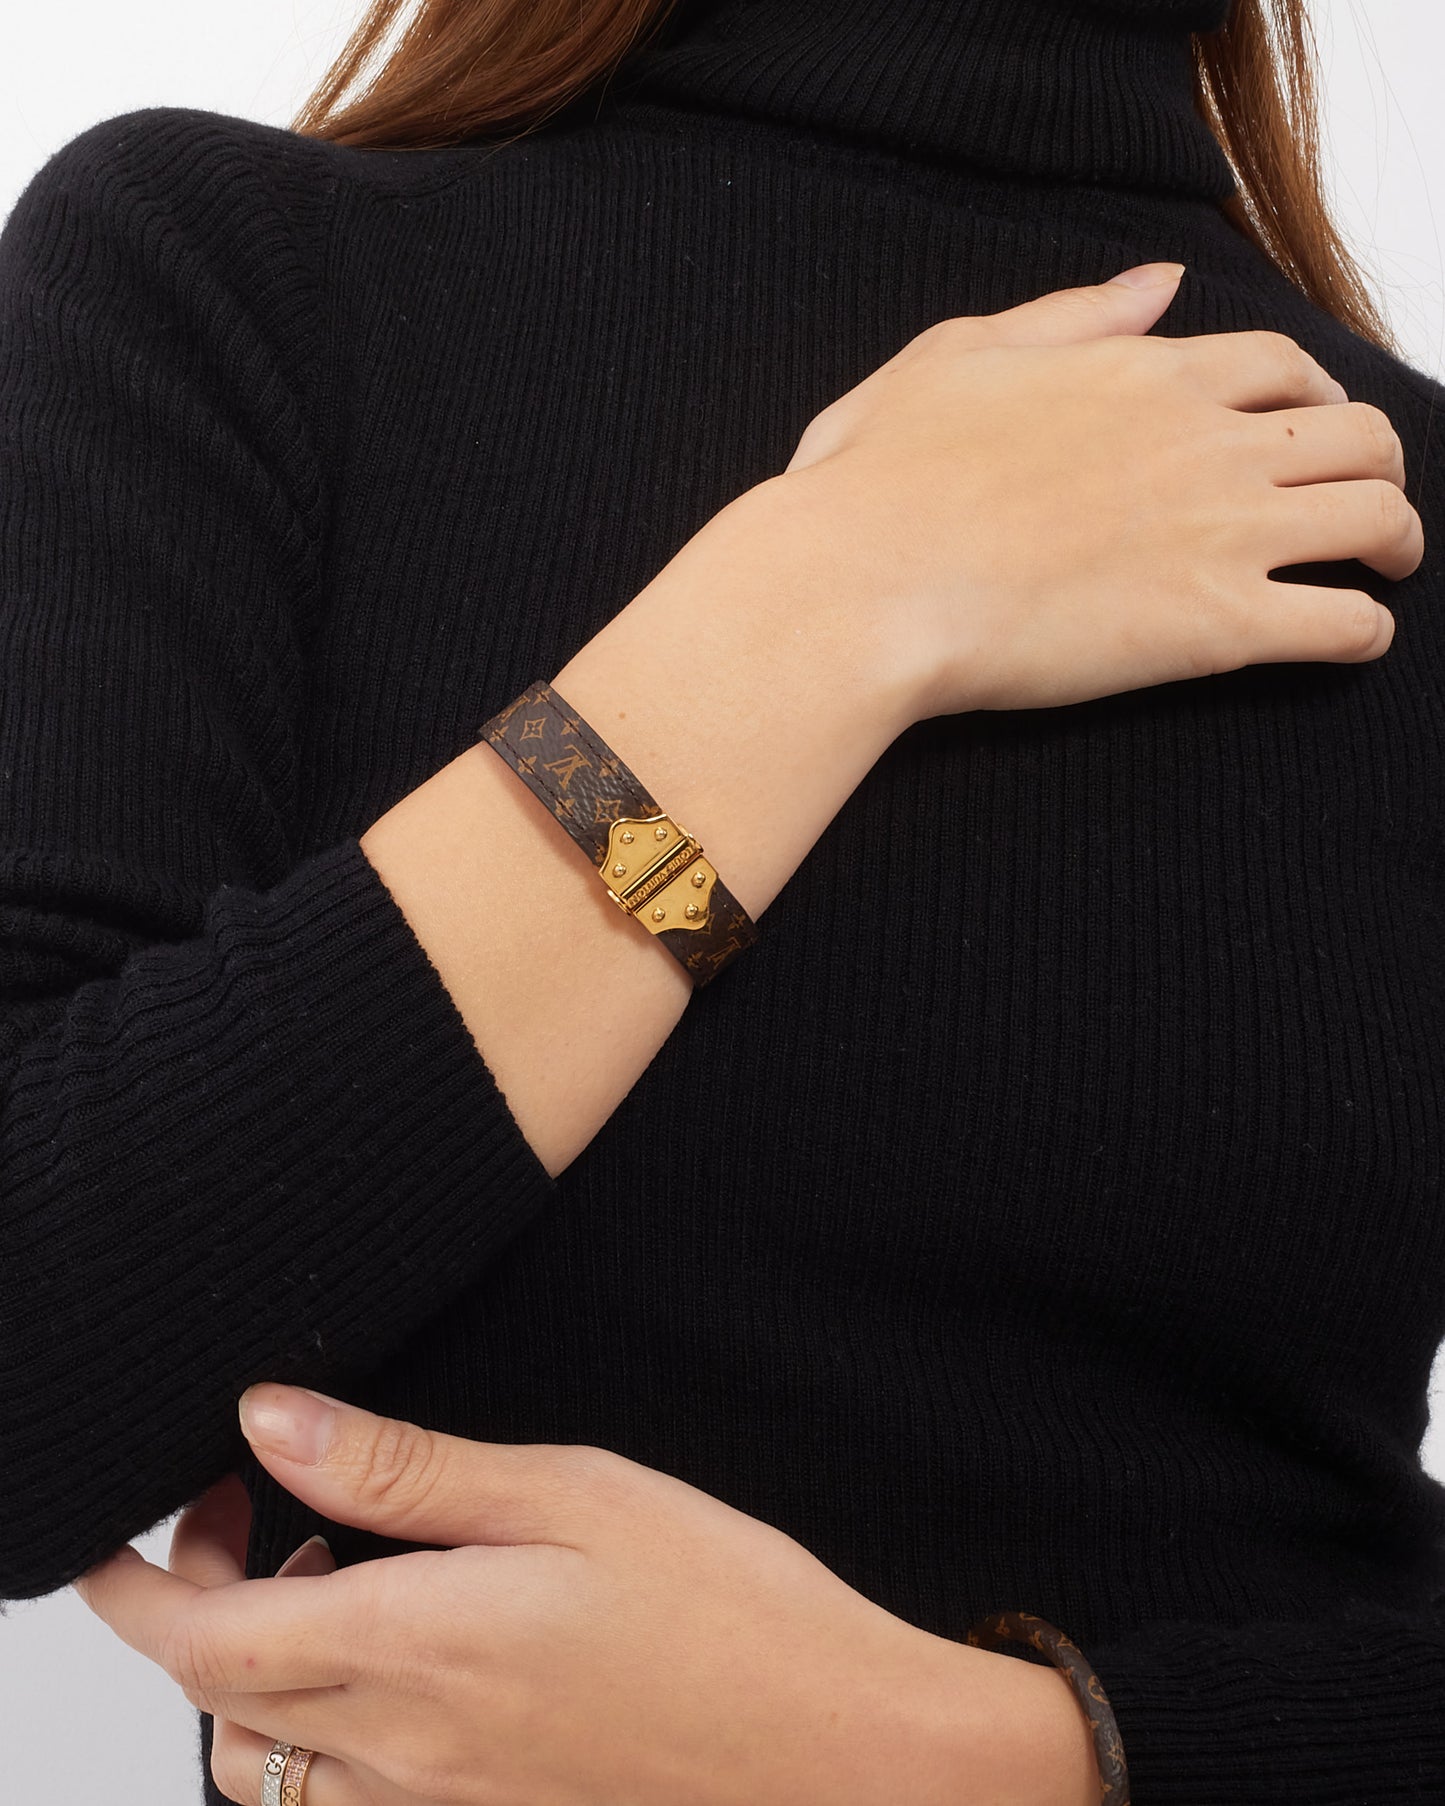 Bracelet Nano en toile monogramme Louis Vuitton